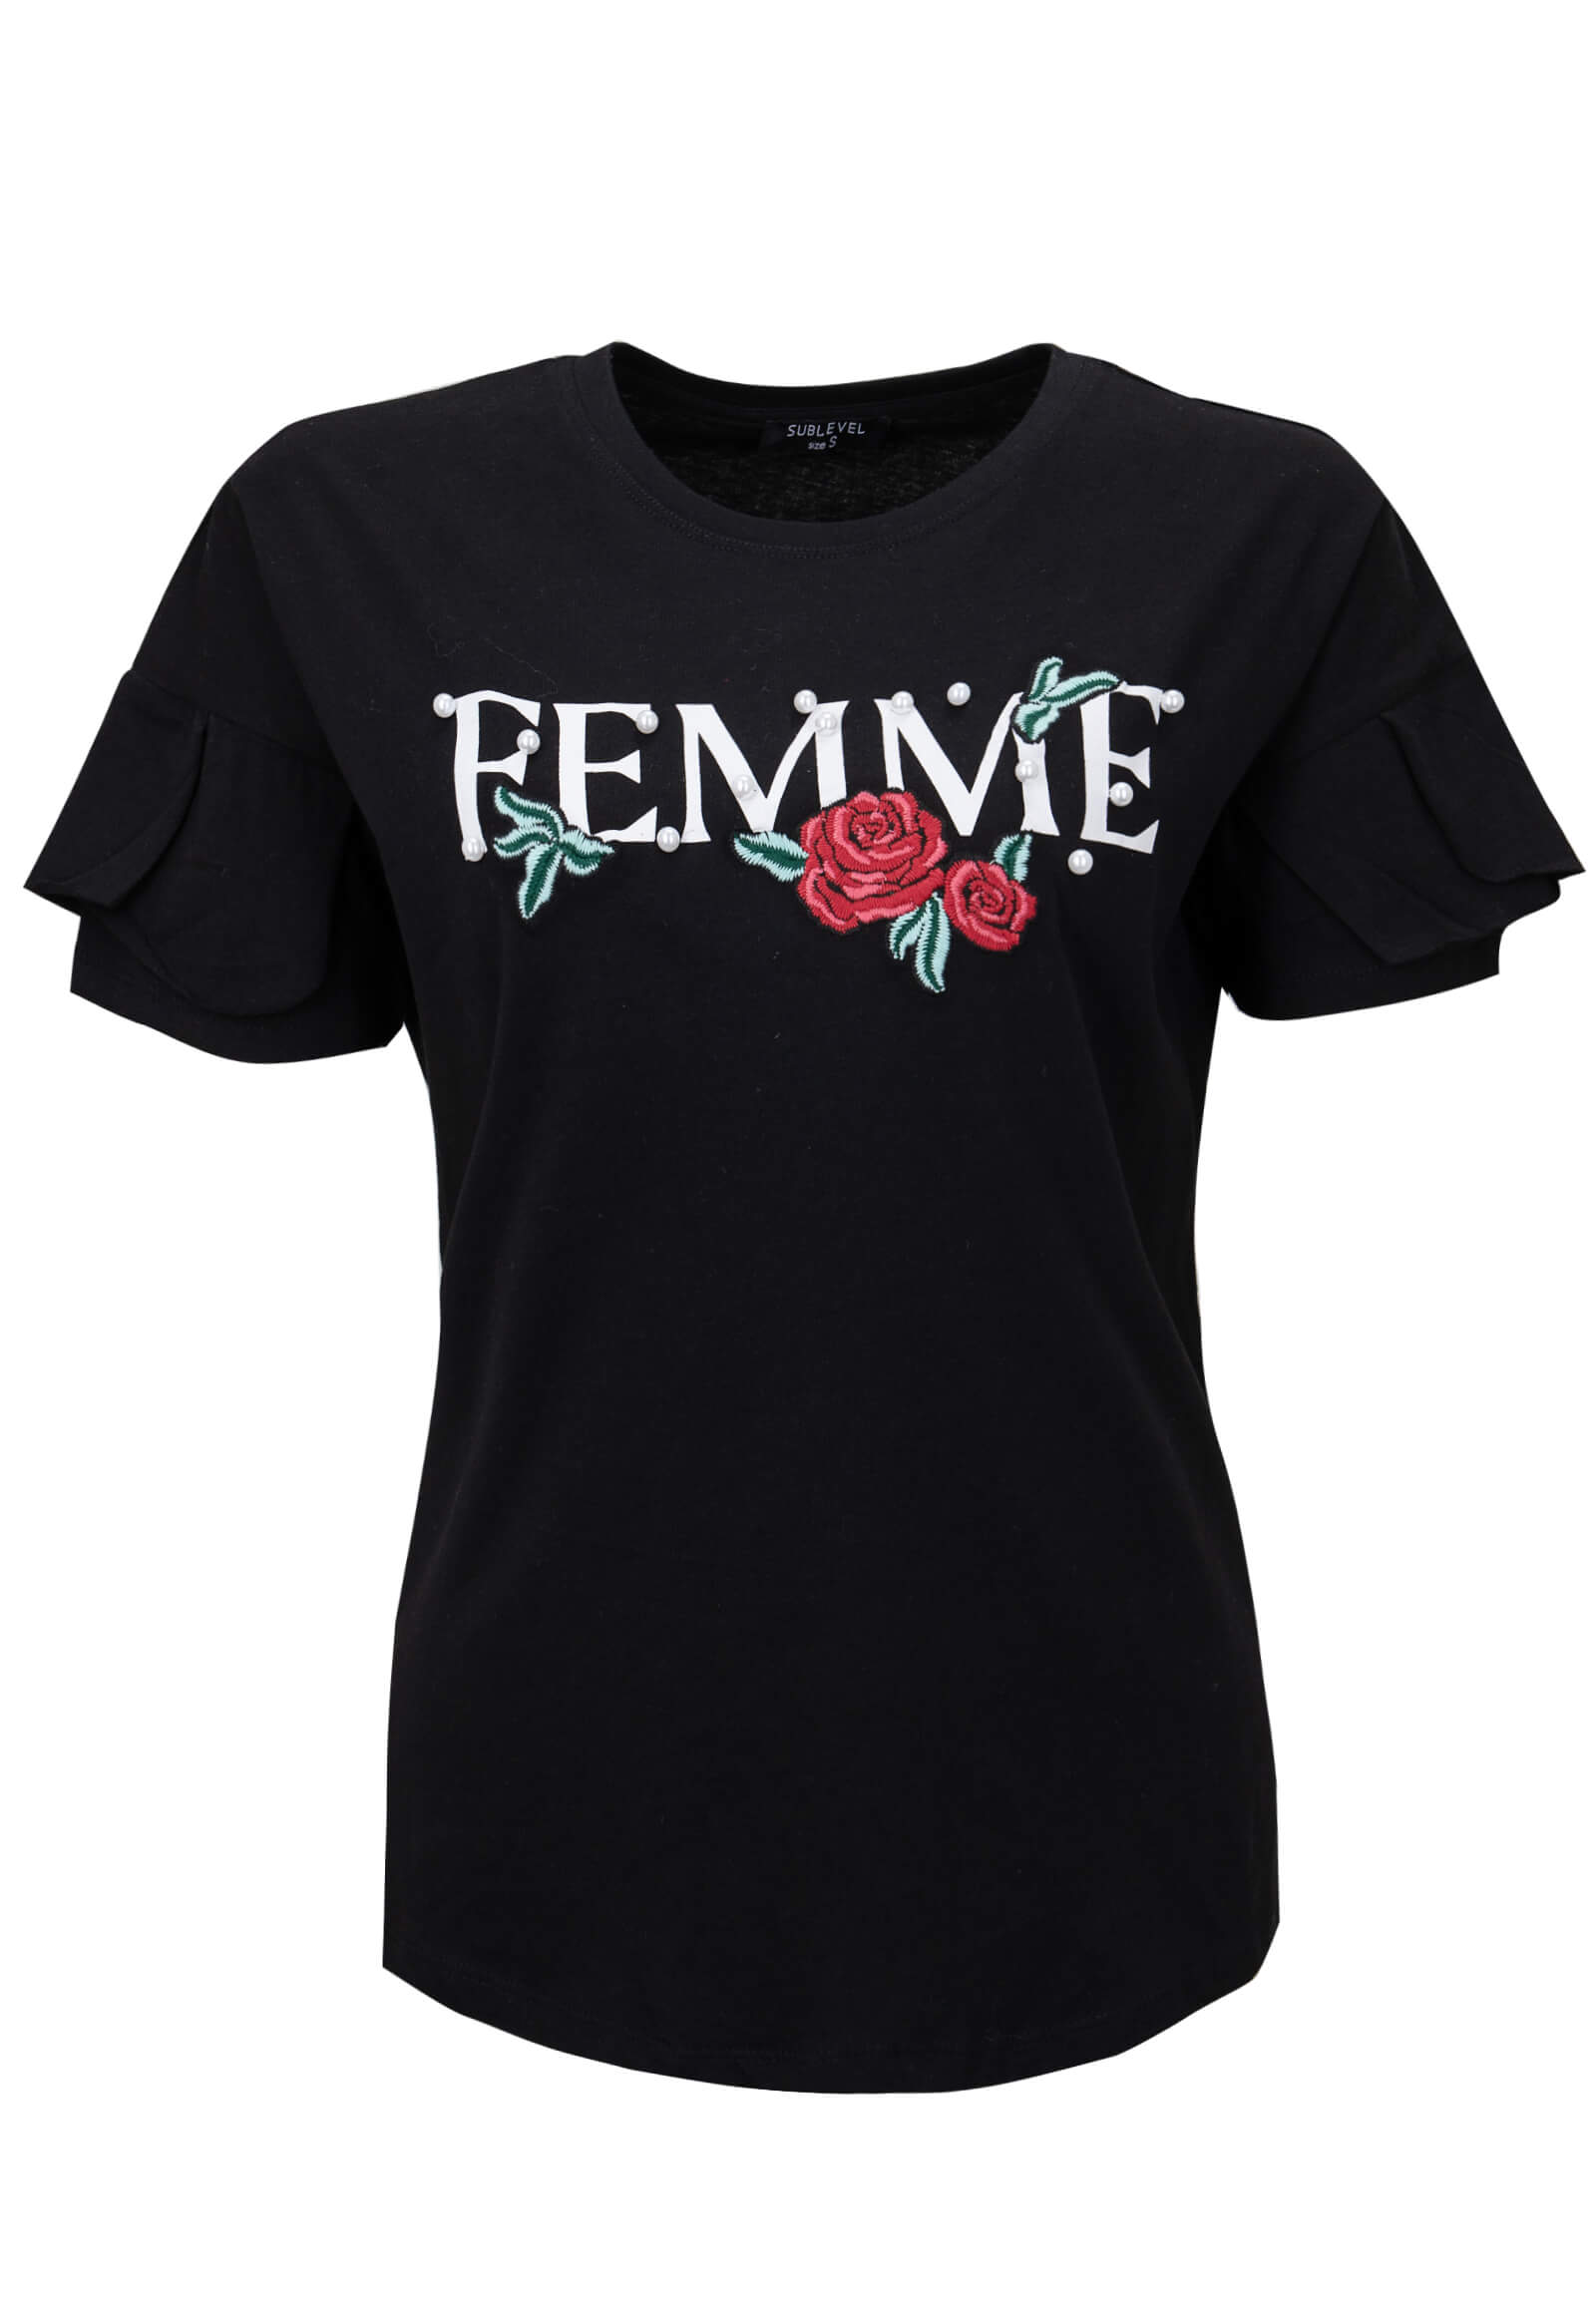 Damen T-Shirt FEMME